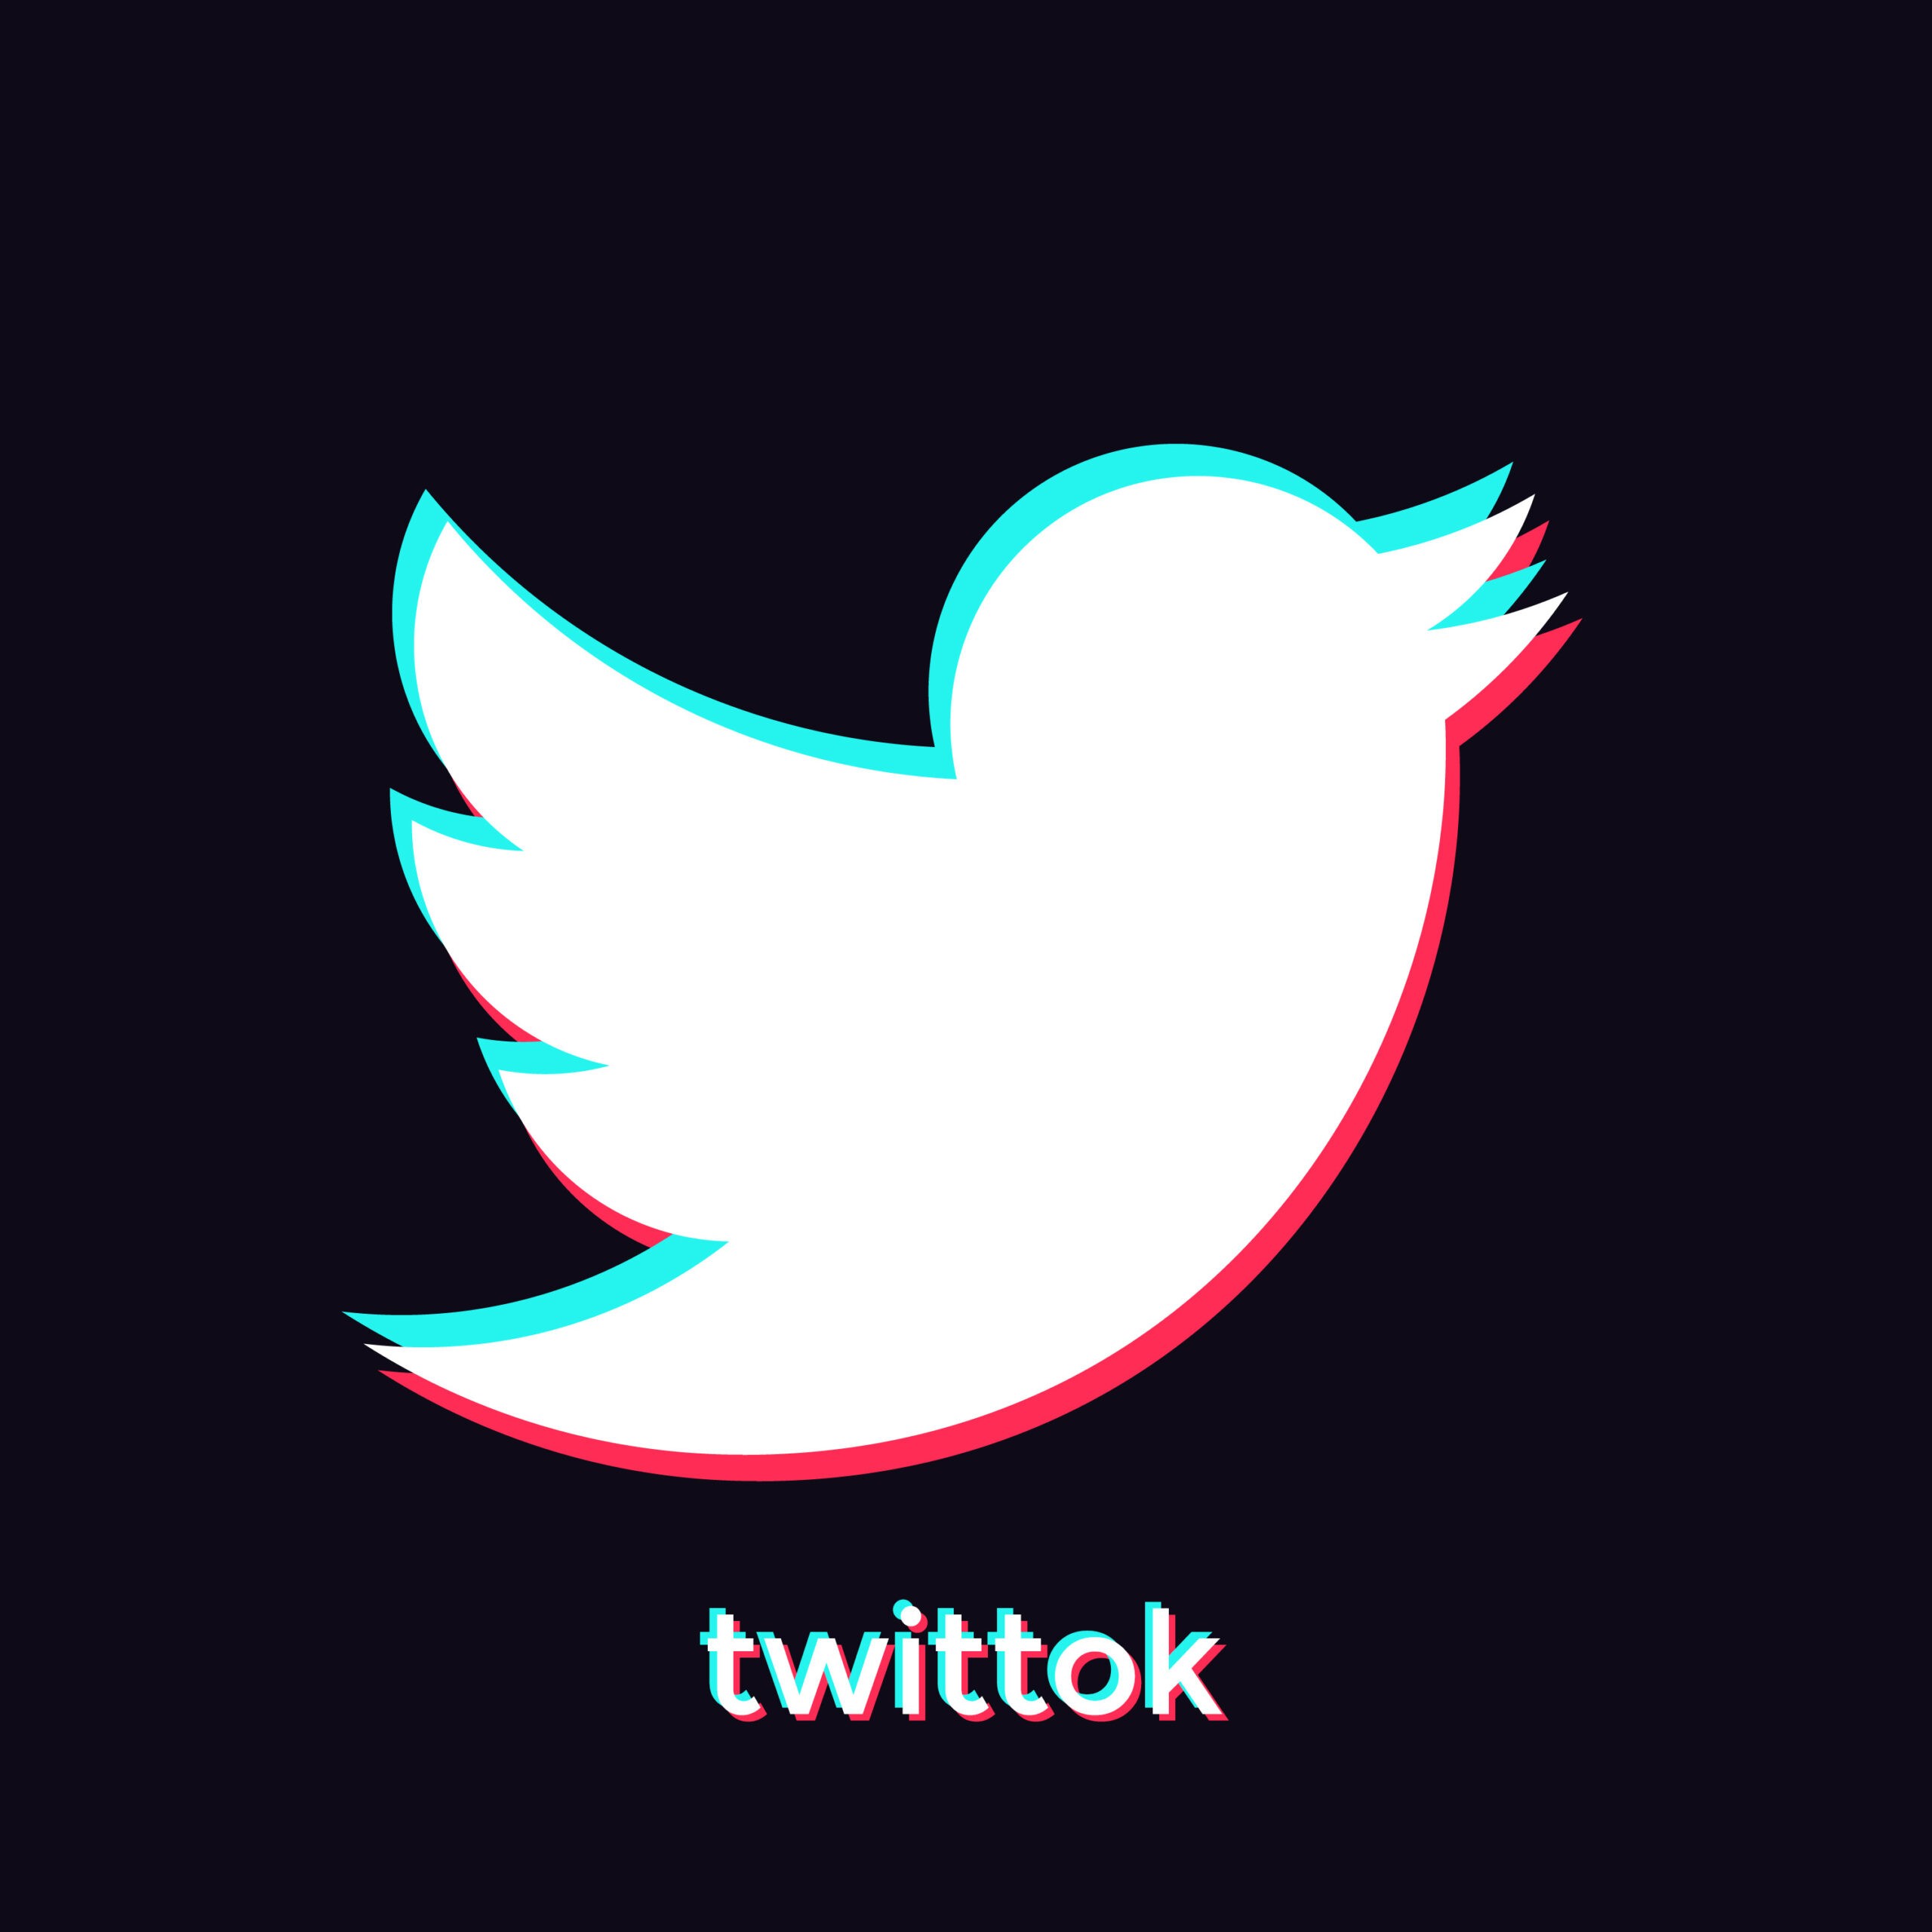 Twitter + TikTok = Twittok